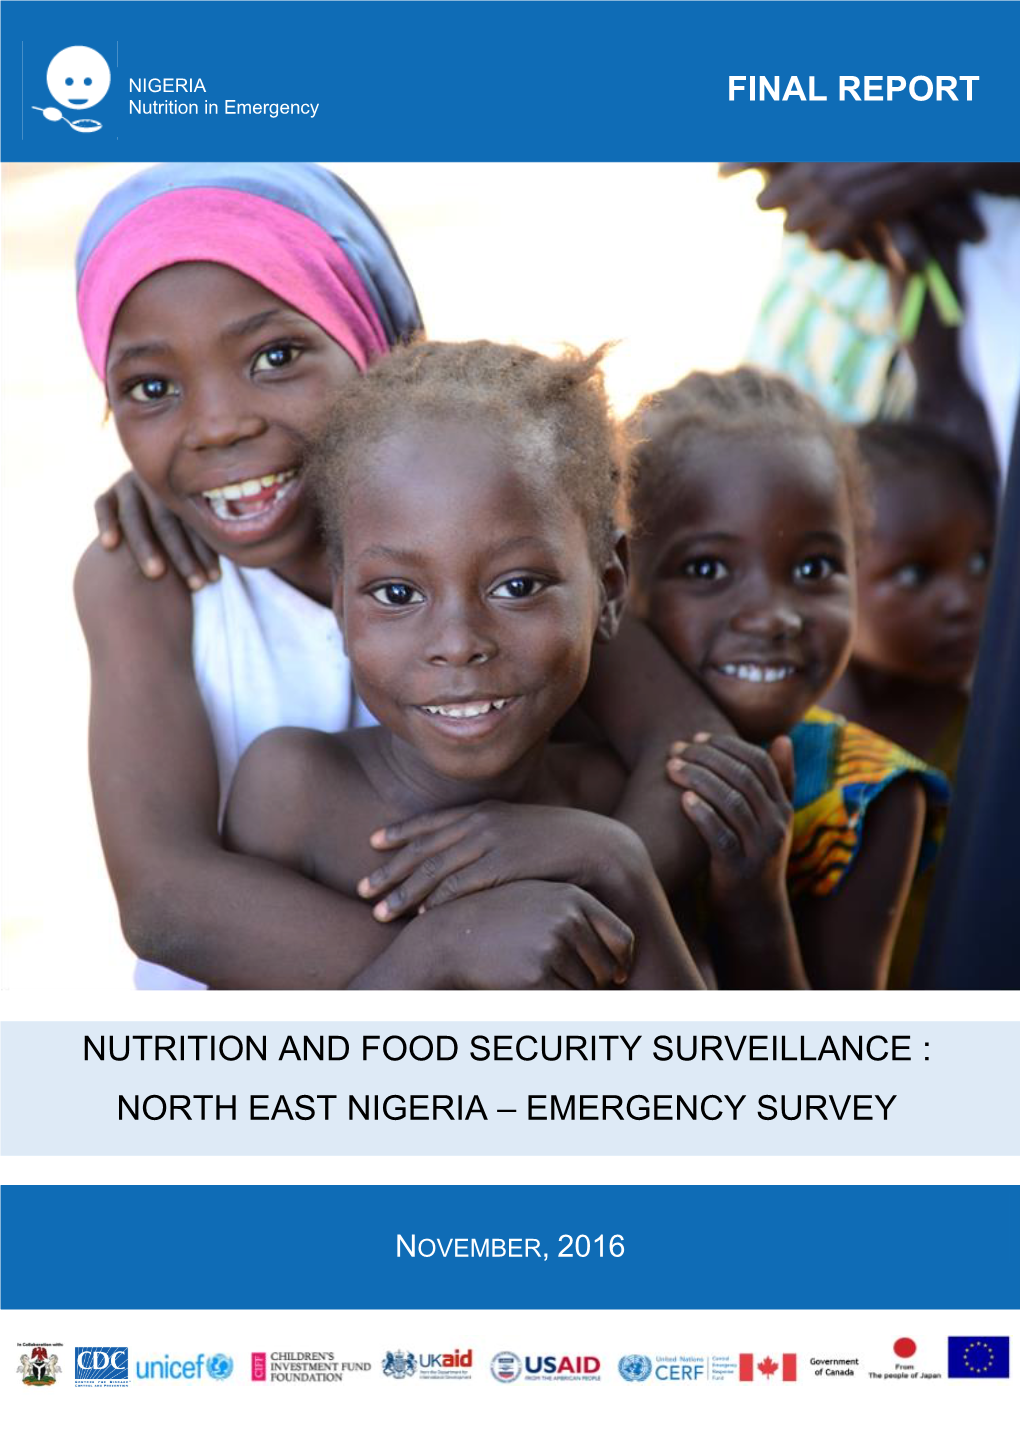 North East Nigeria – Emergency Survey